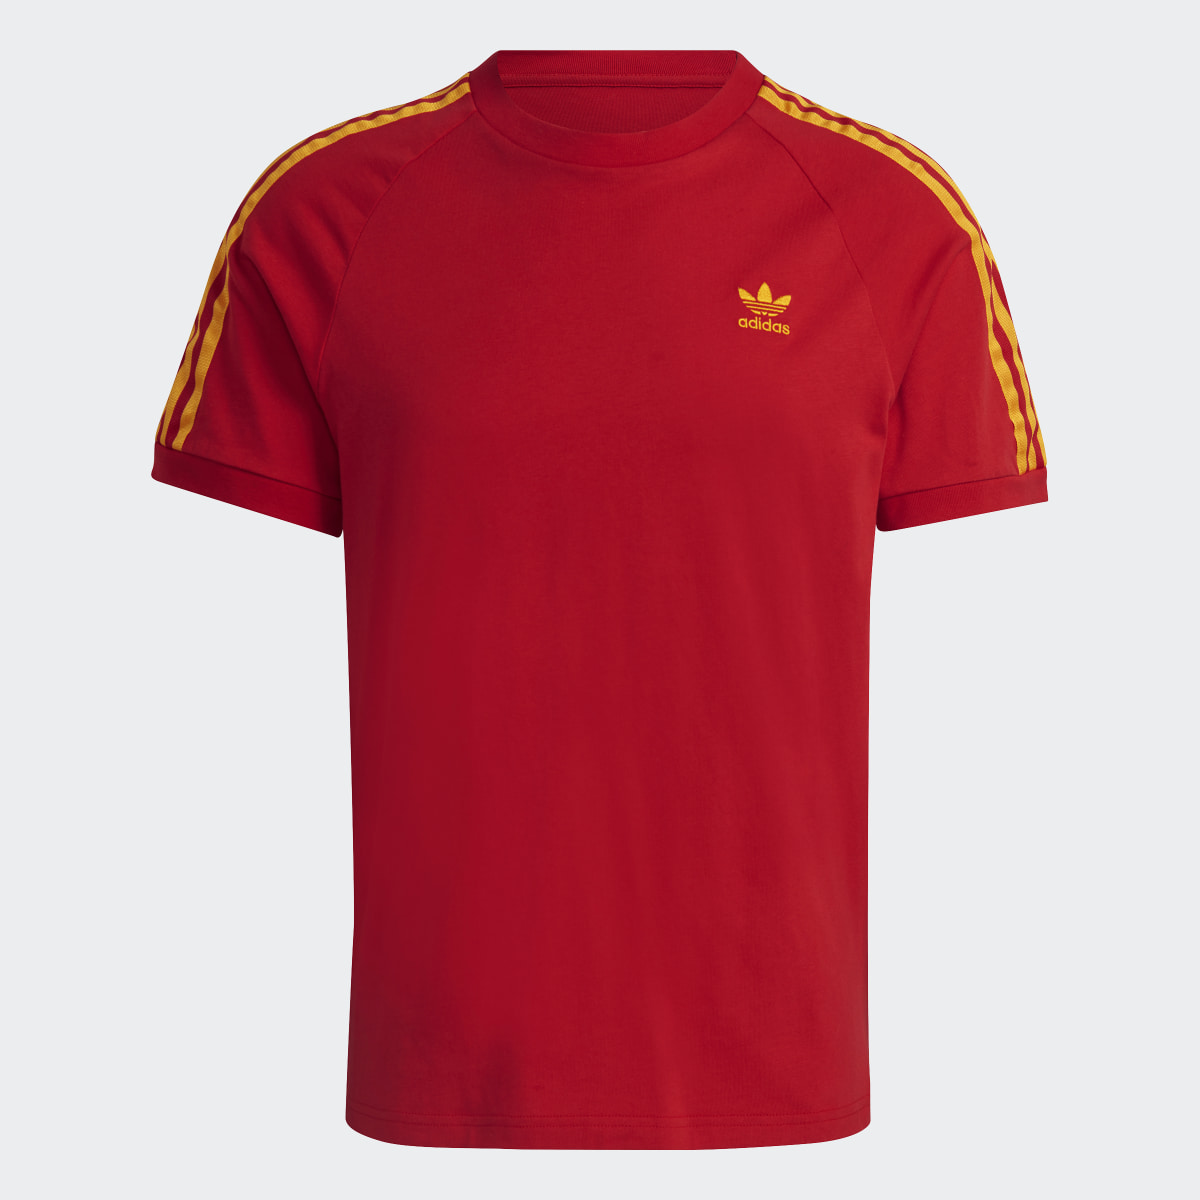 Adidas 3-Streifen T-Shirt. 5